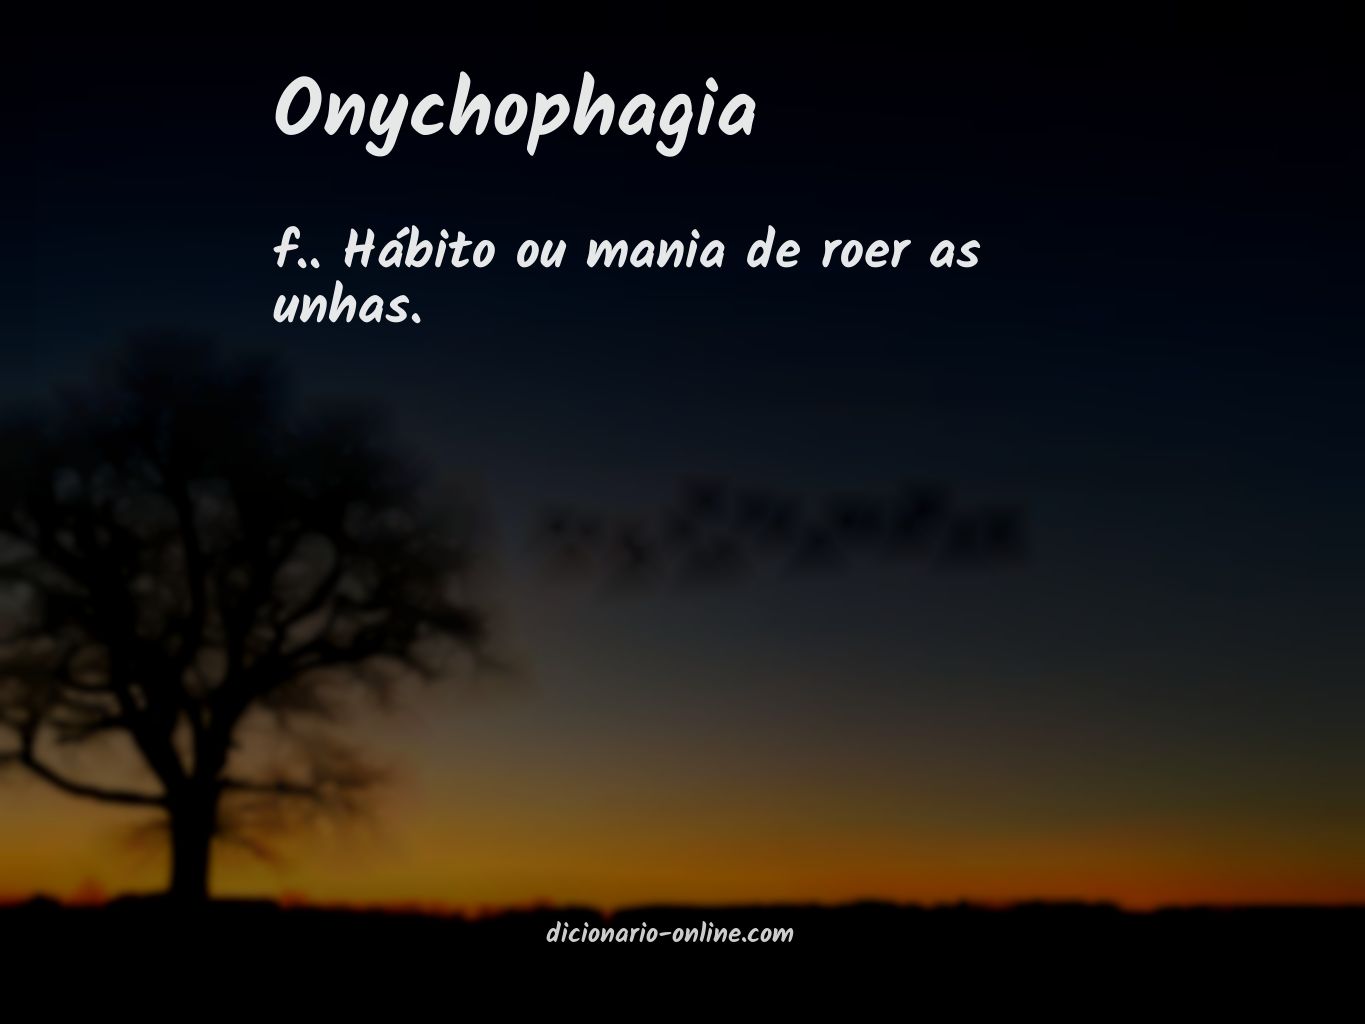 Significado de onychophagia